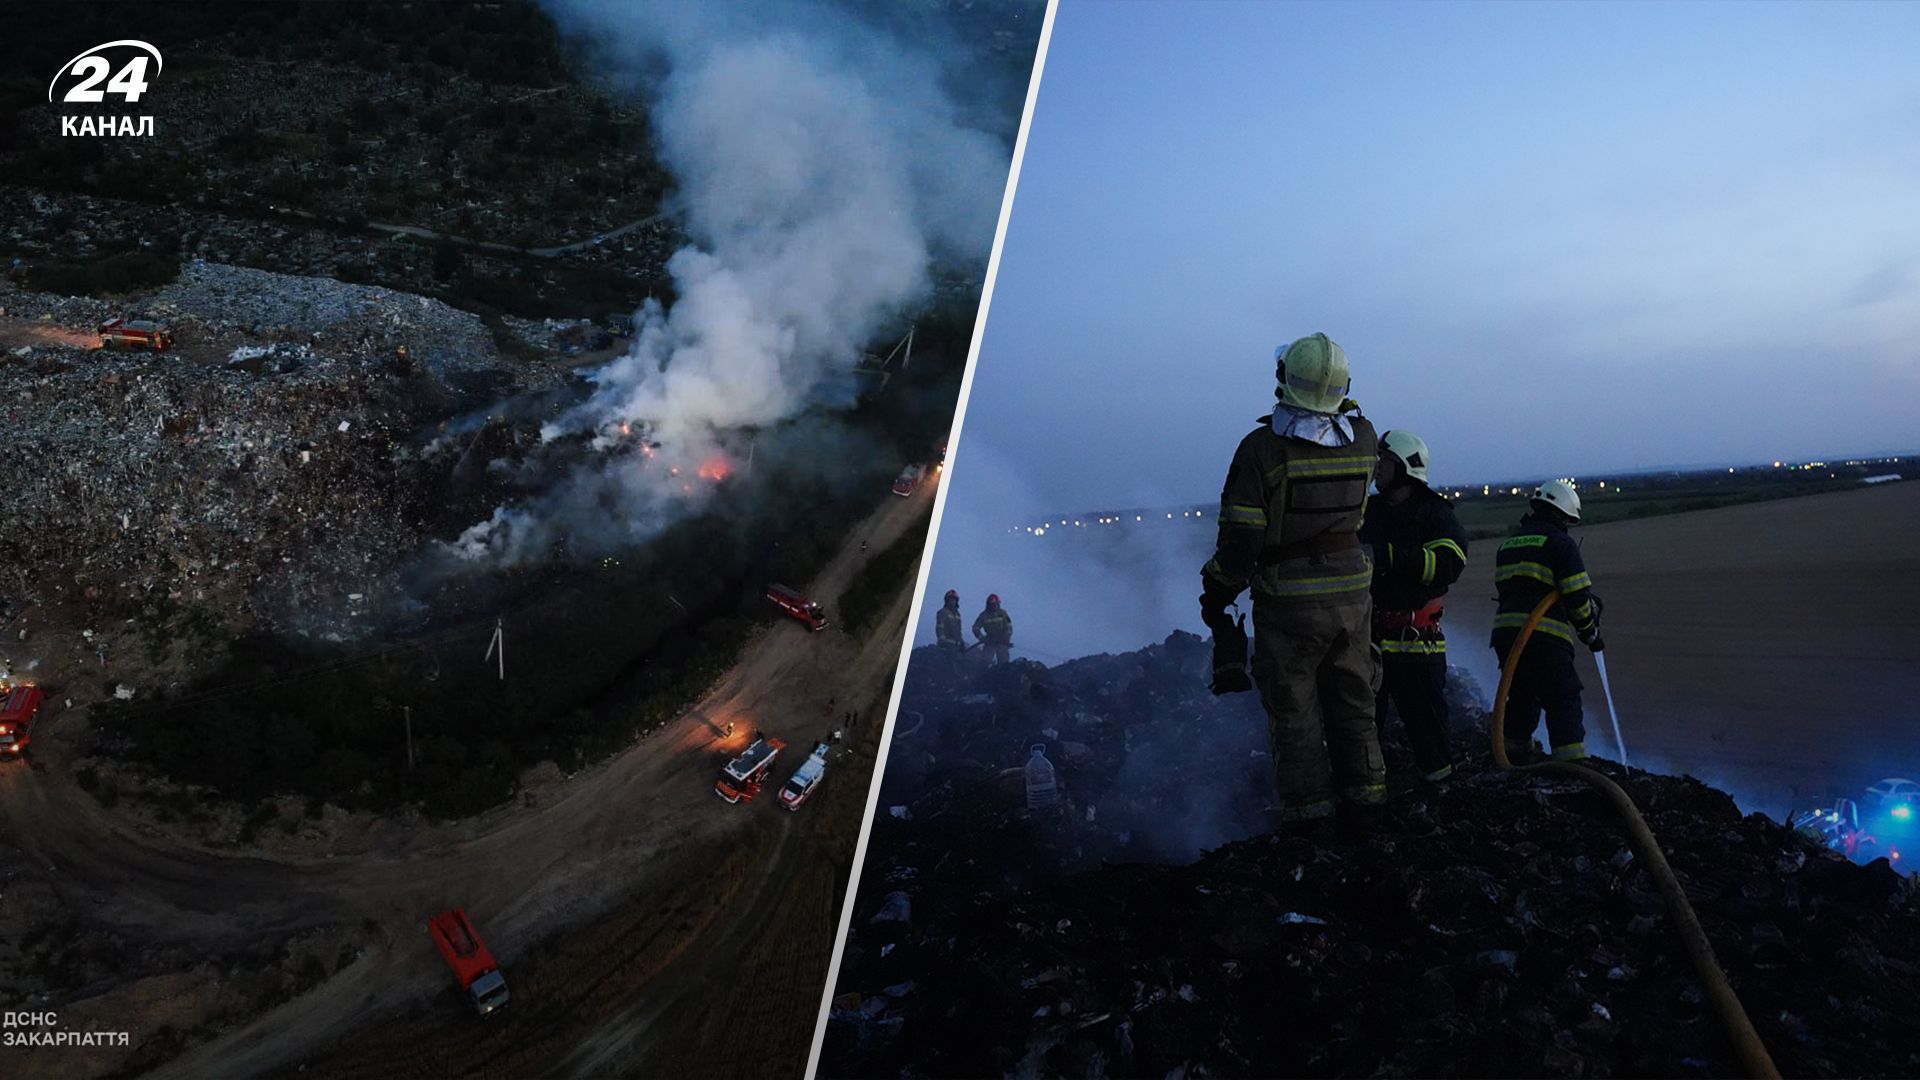 Гасили усю ніч: рятувальники ліквідували масштабну пожежу на сміттєзвалищі під Ужгородом - 24 Канал